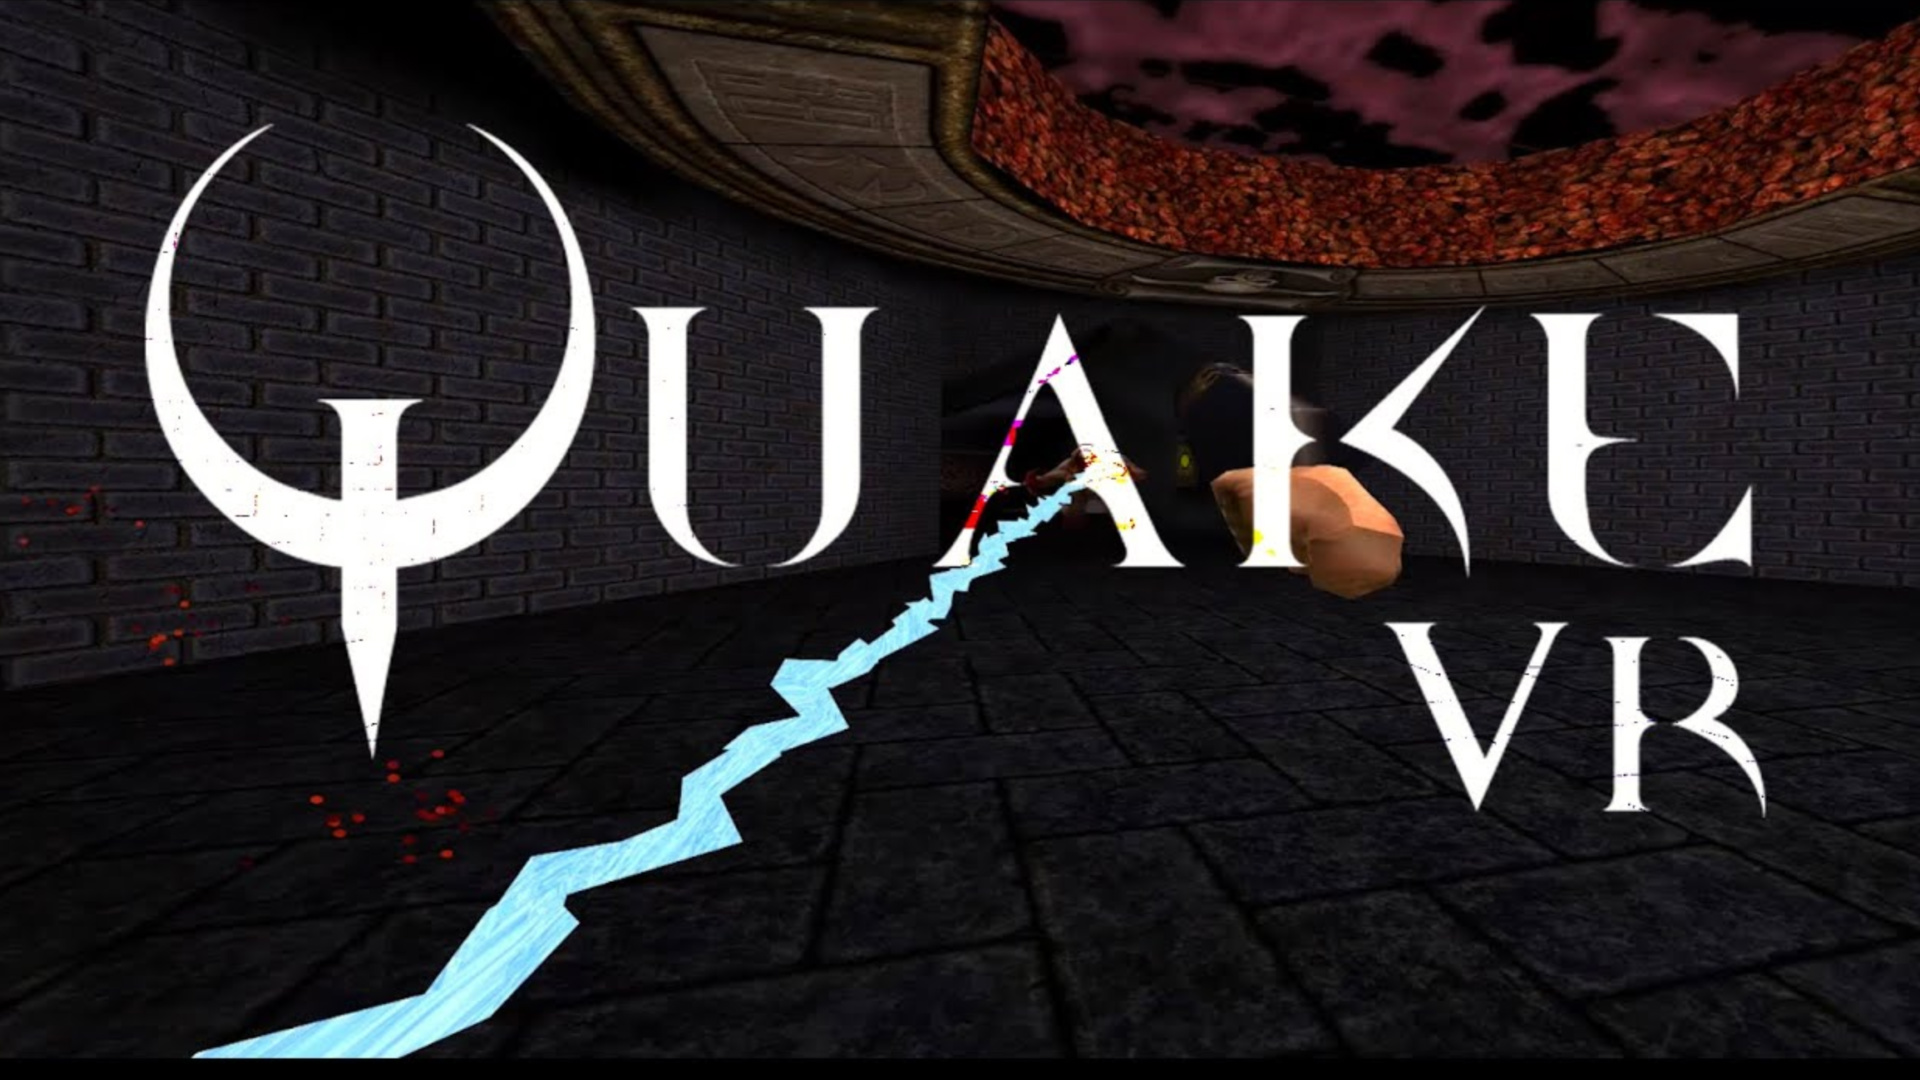 quake 2 oculus quest